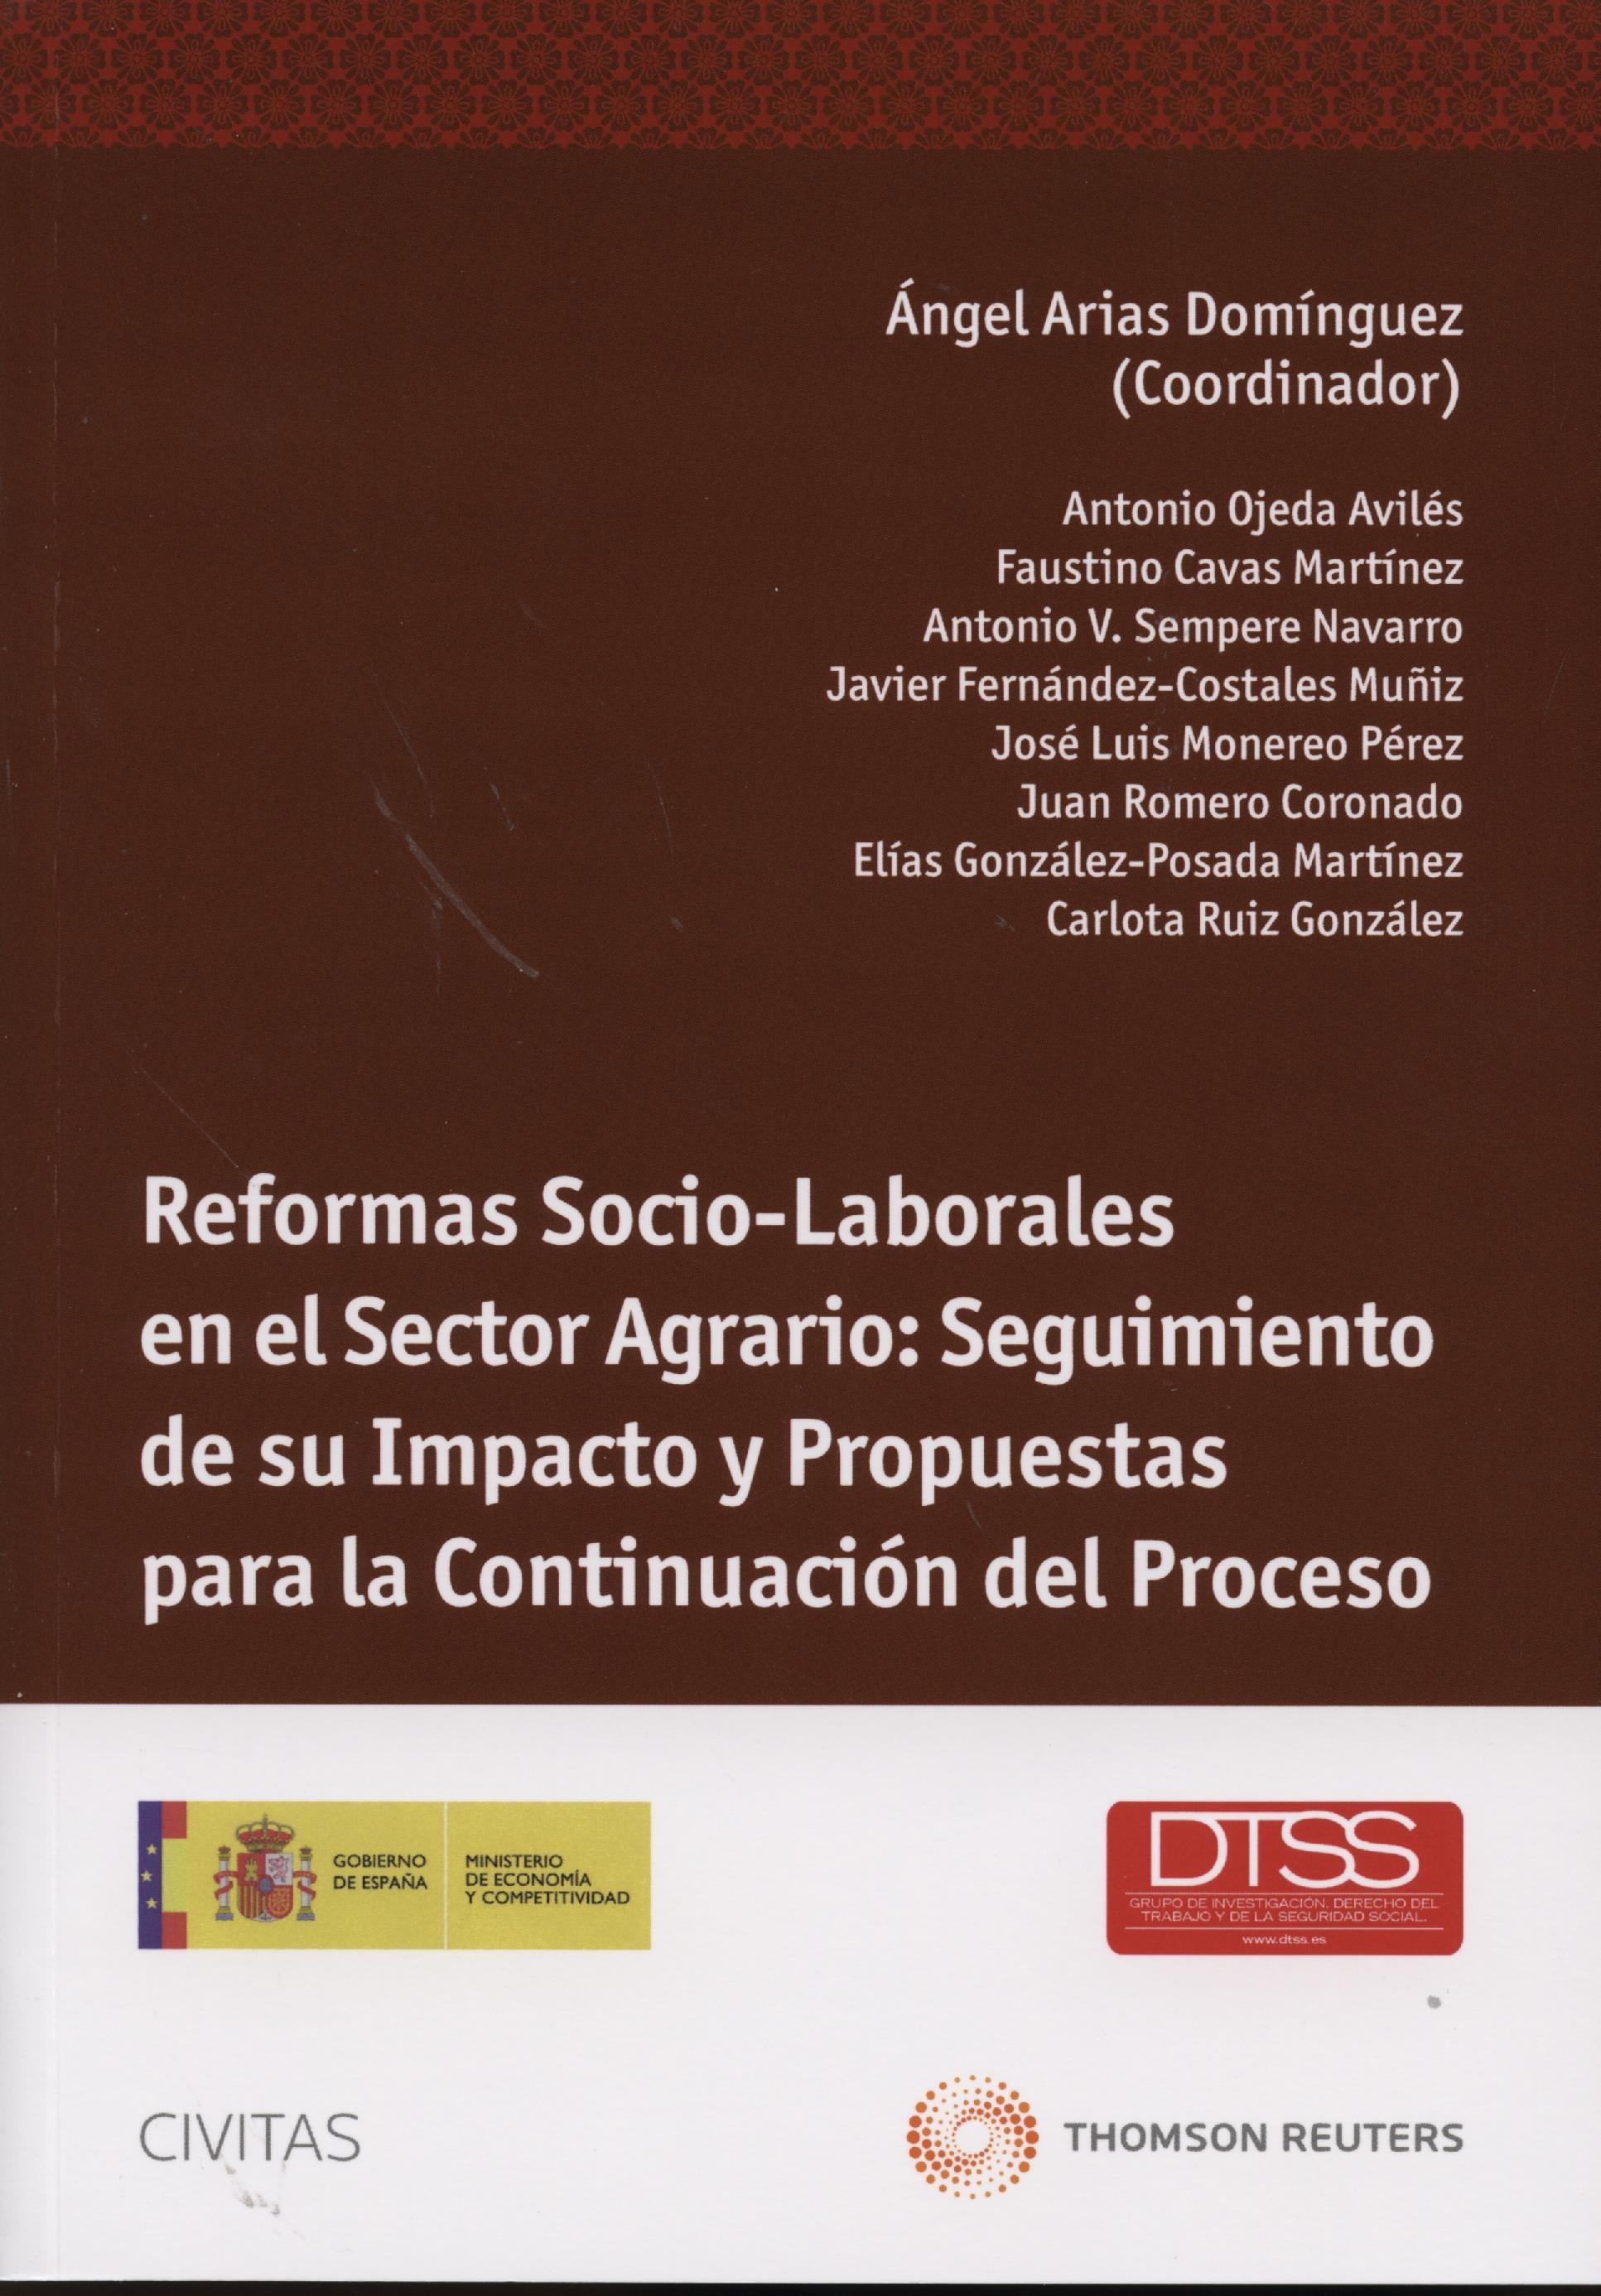 Reformas sociolaborales en el sector agrario "Seguimiento de su impacto propuestas para la continuación del pr"